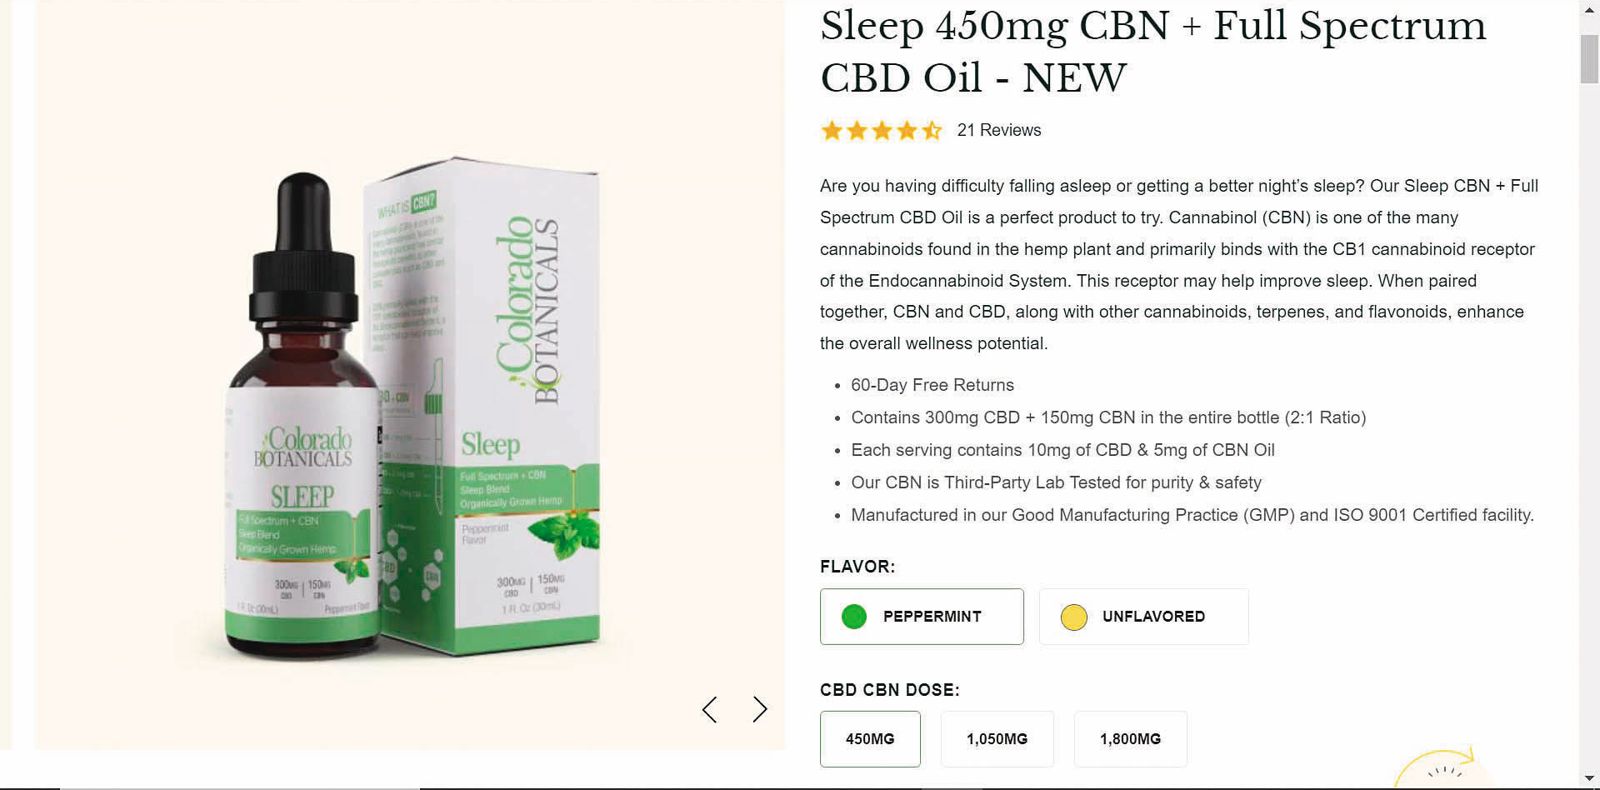 殷琪購買知名大麻產品網站「Colorado Botanicals」的Sleep精油，含有大麻成分。（讀者提供）